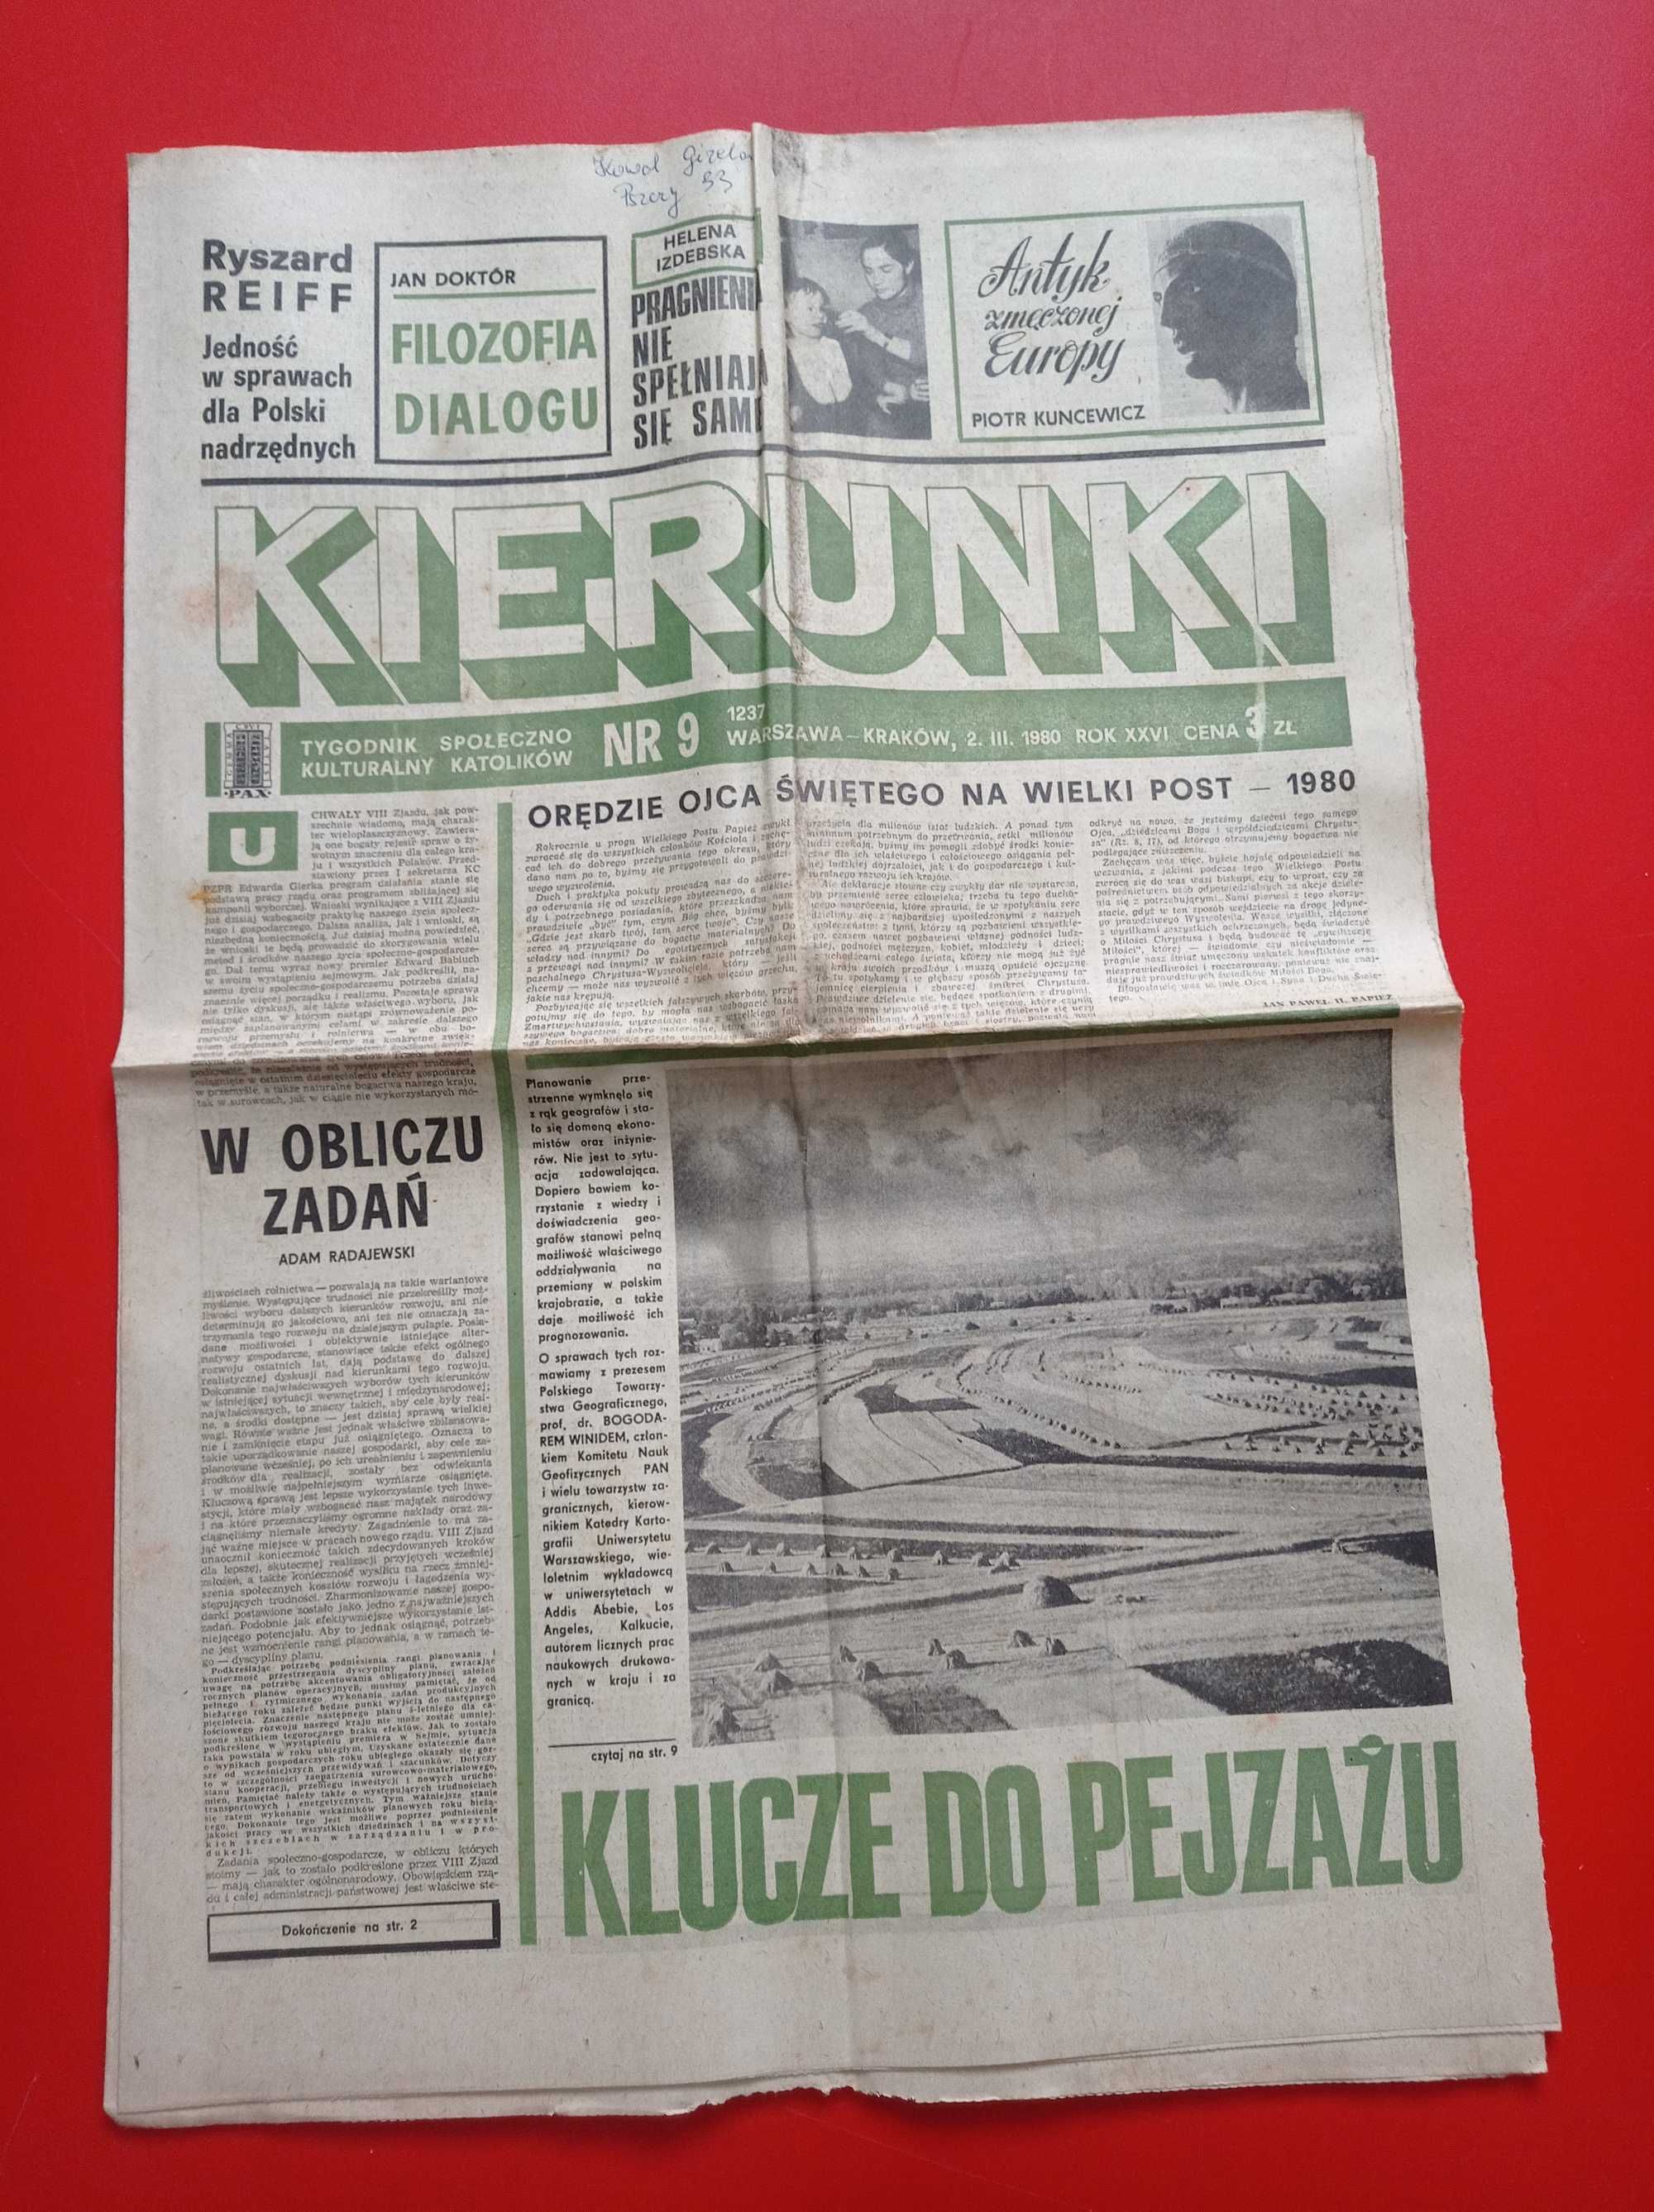 Kierunki tygodnik nr 9 / 1980; 2 marca 1980